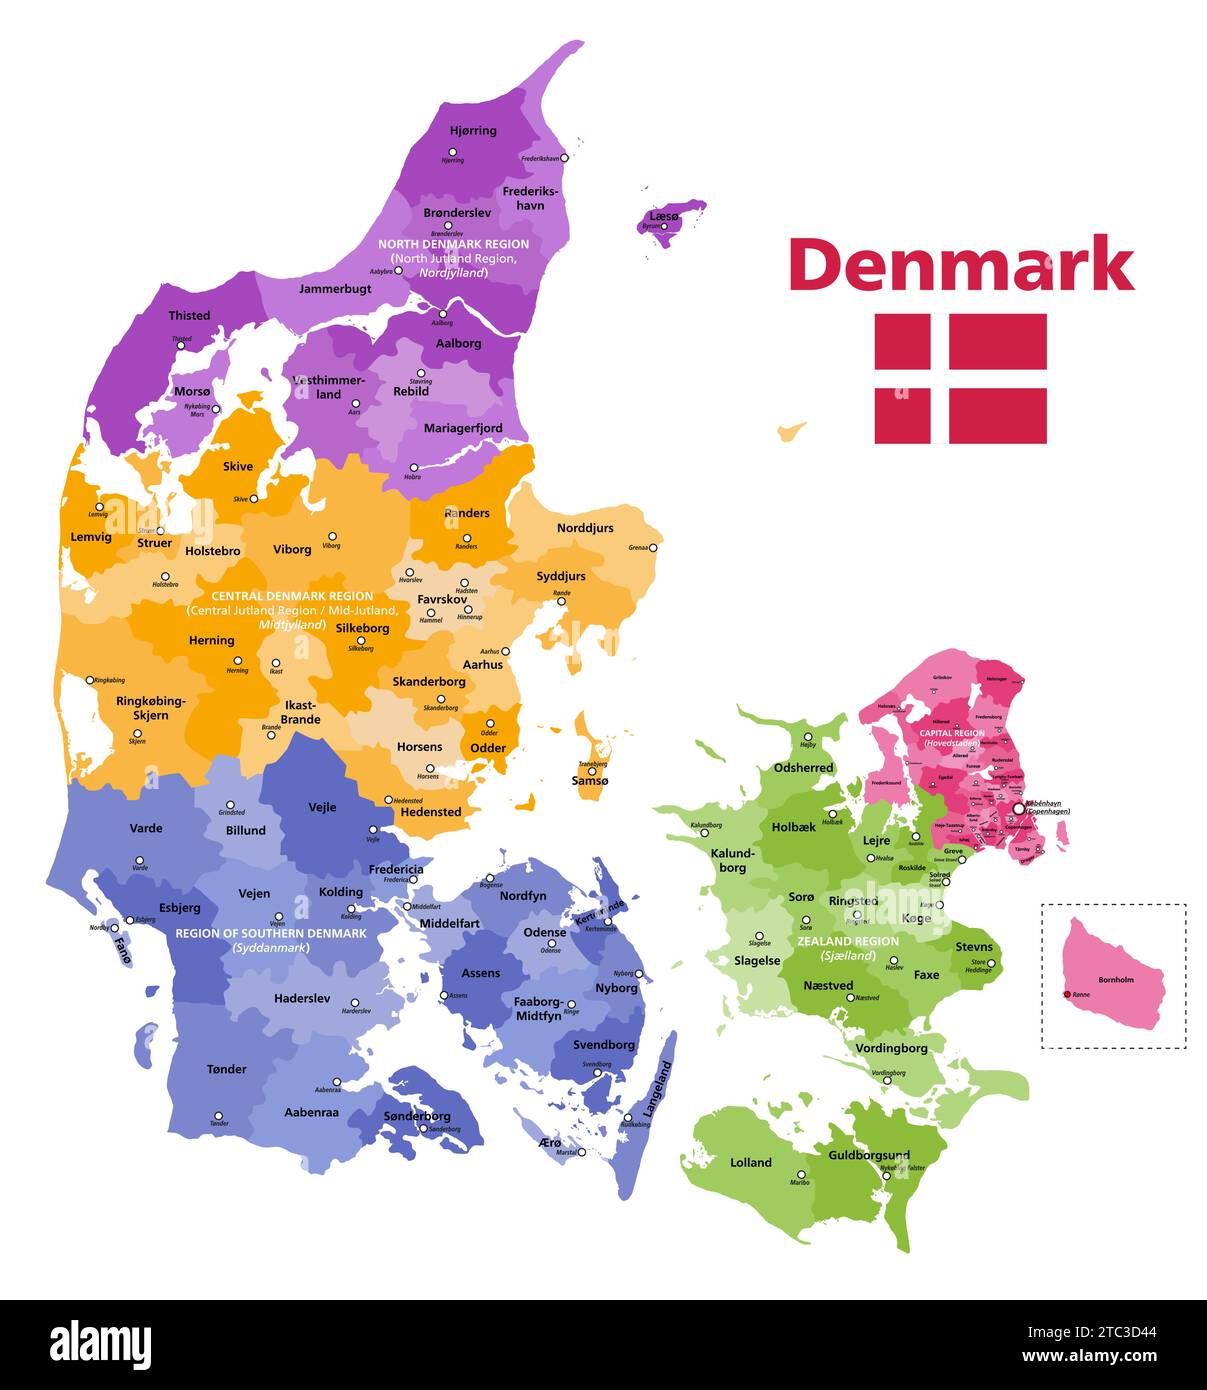 Mappa vettoriale dei comuni della Danimarca colorata per regioni con centri amministrativi Illustrazione Vettoriale